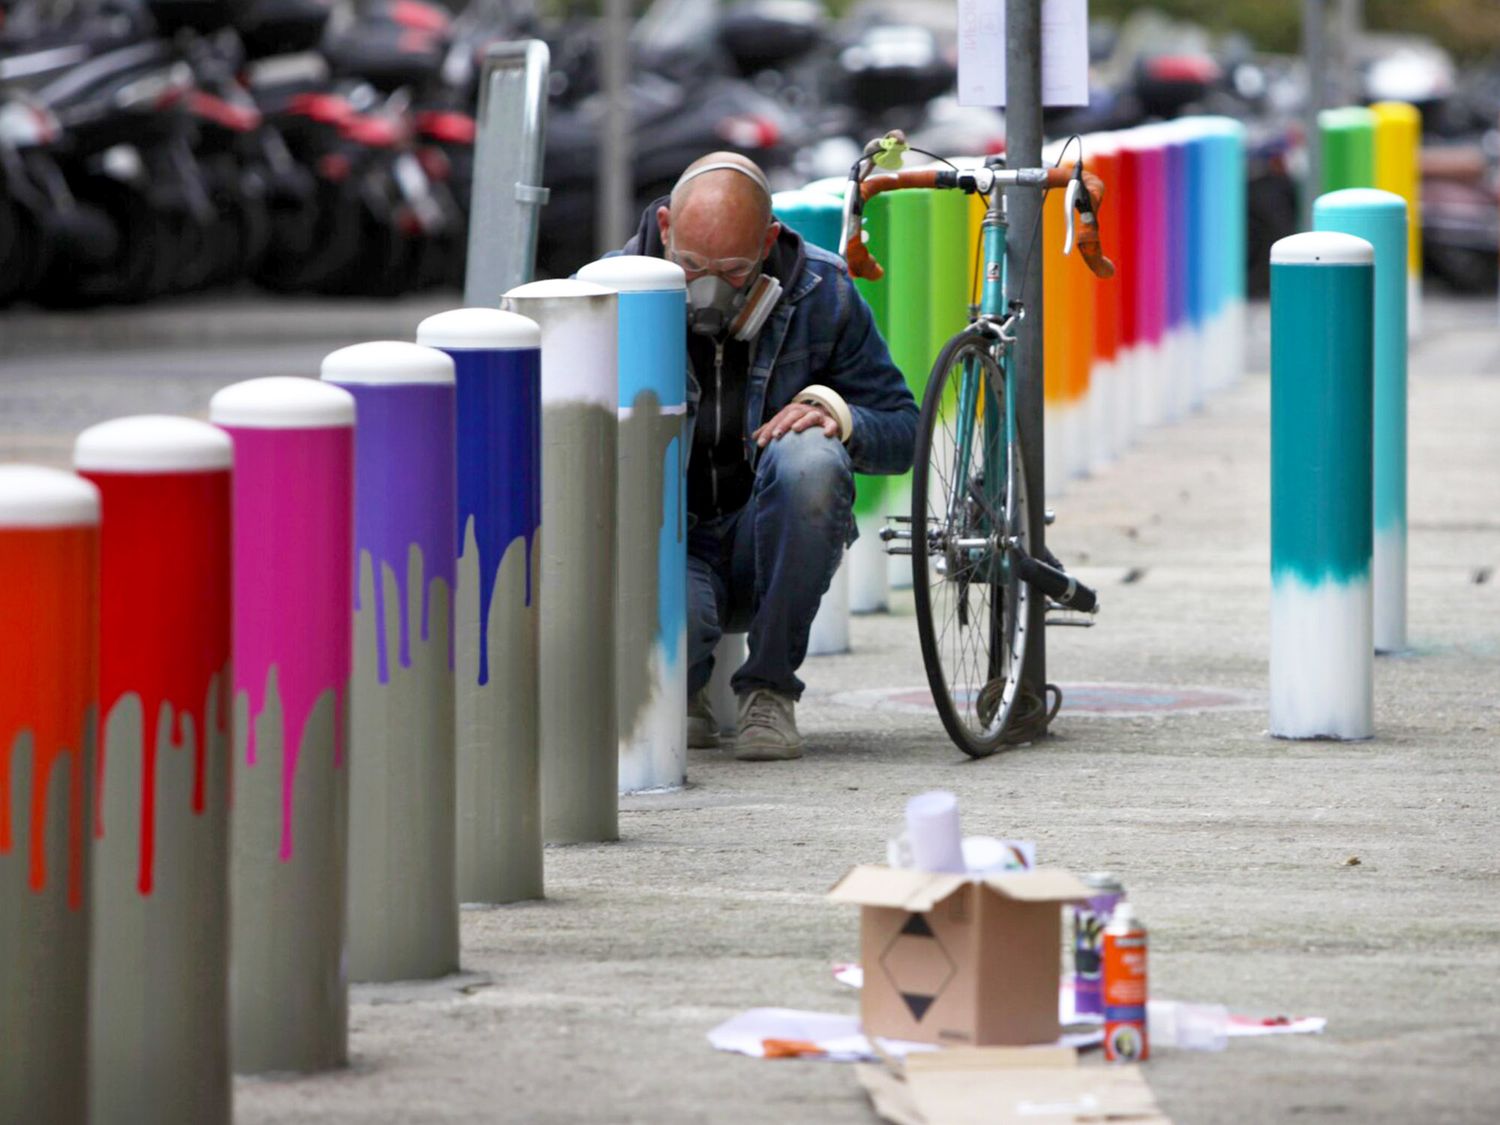 L’artiste en plein travail devant la gare de Lyon lors de la réalisation de la série ”Colors Gradients”, réalisée grâce au support de Quai36 et pour le plus grand plaisir des voyageurs (©David Paquin).